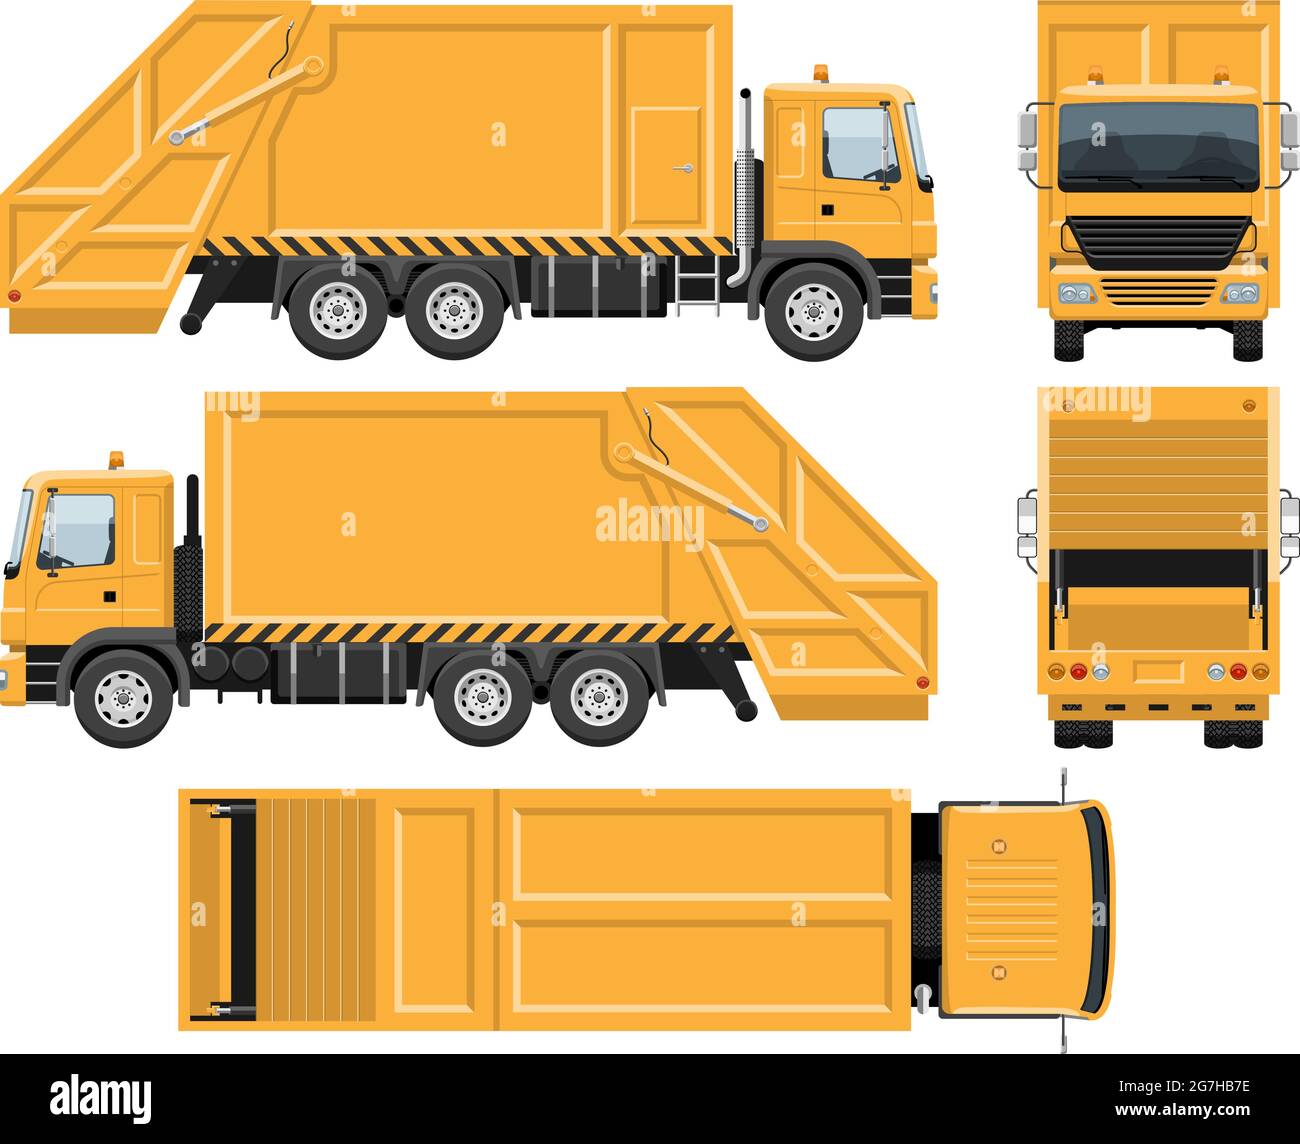 Modèle de vecteur de camion d'ordures avec des couleurs simples sans dégradés ni effets. Vue latérale, avant, arrière et supérieure Illustration de Vecteur